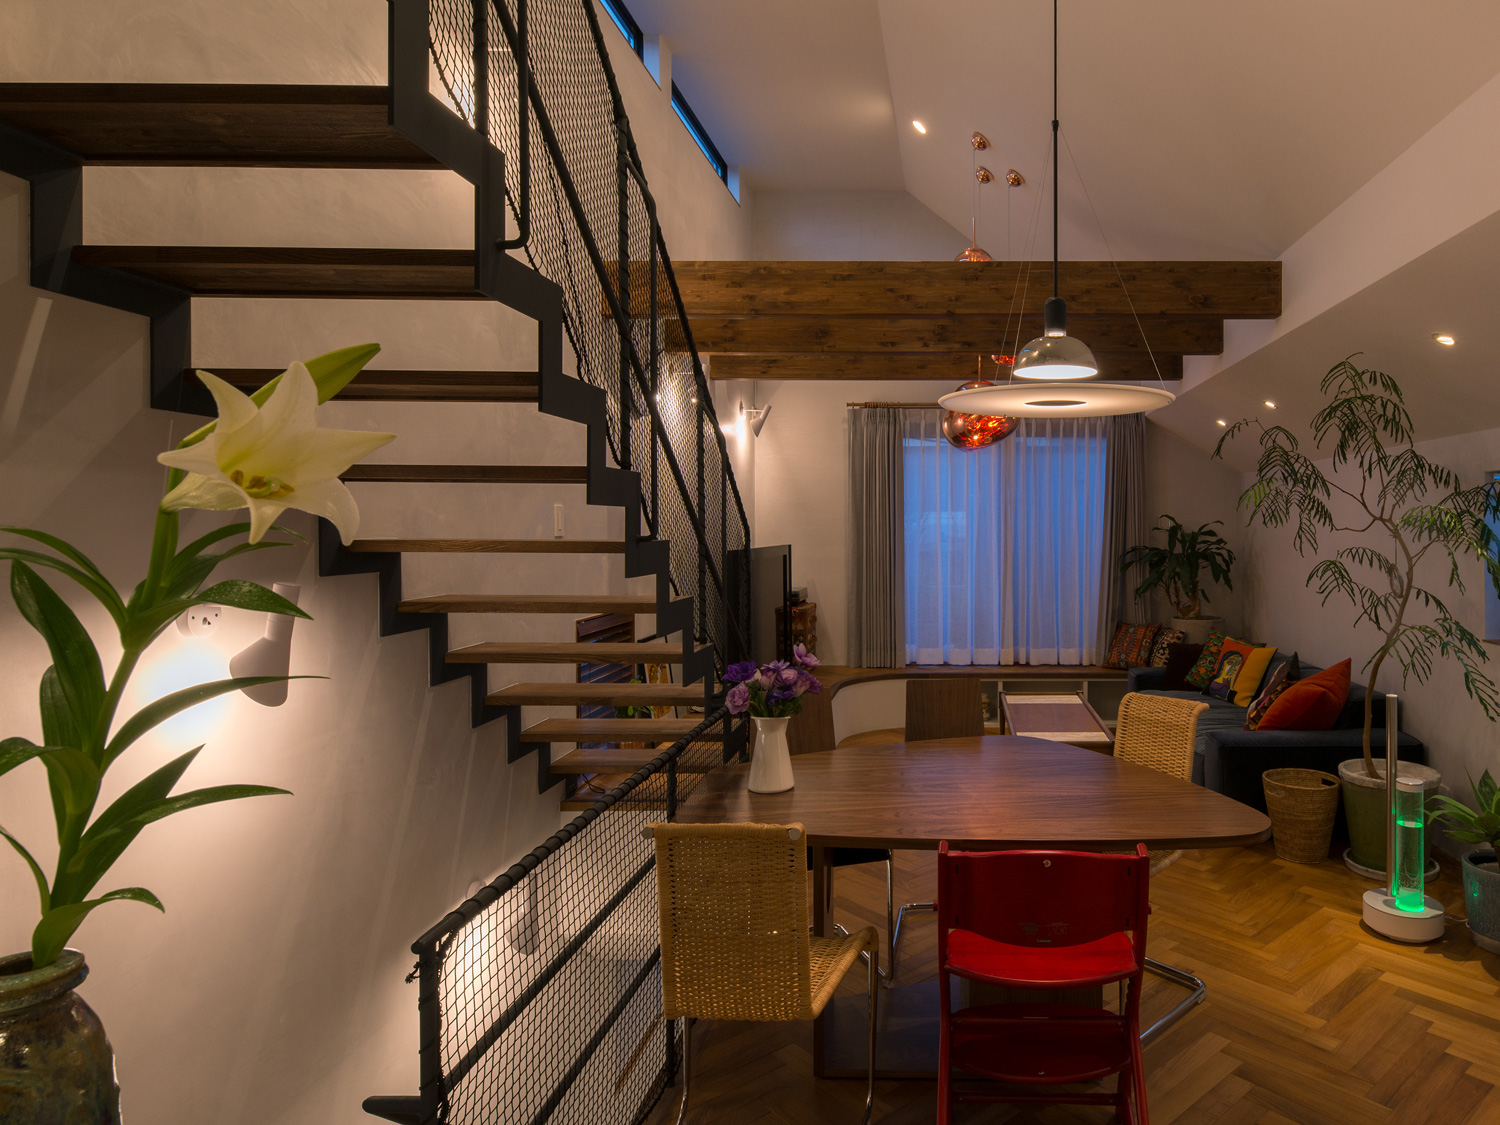 壁に取り付けられたスポットライトやペンダントに照らされるヘリンボーン柄の床のLDK・デザイン住宅